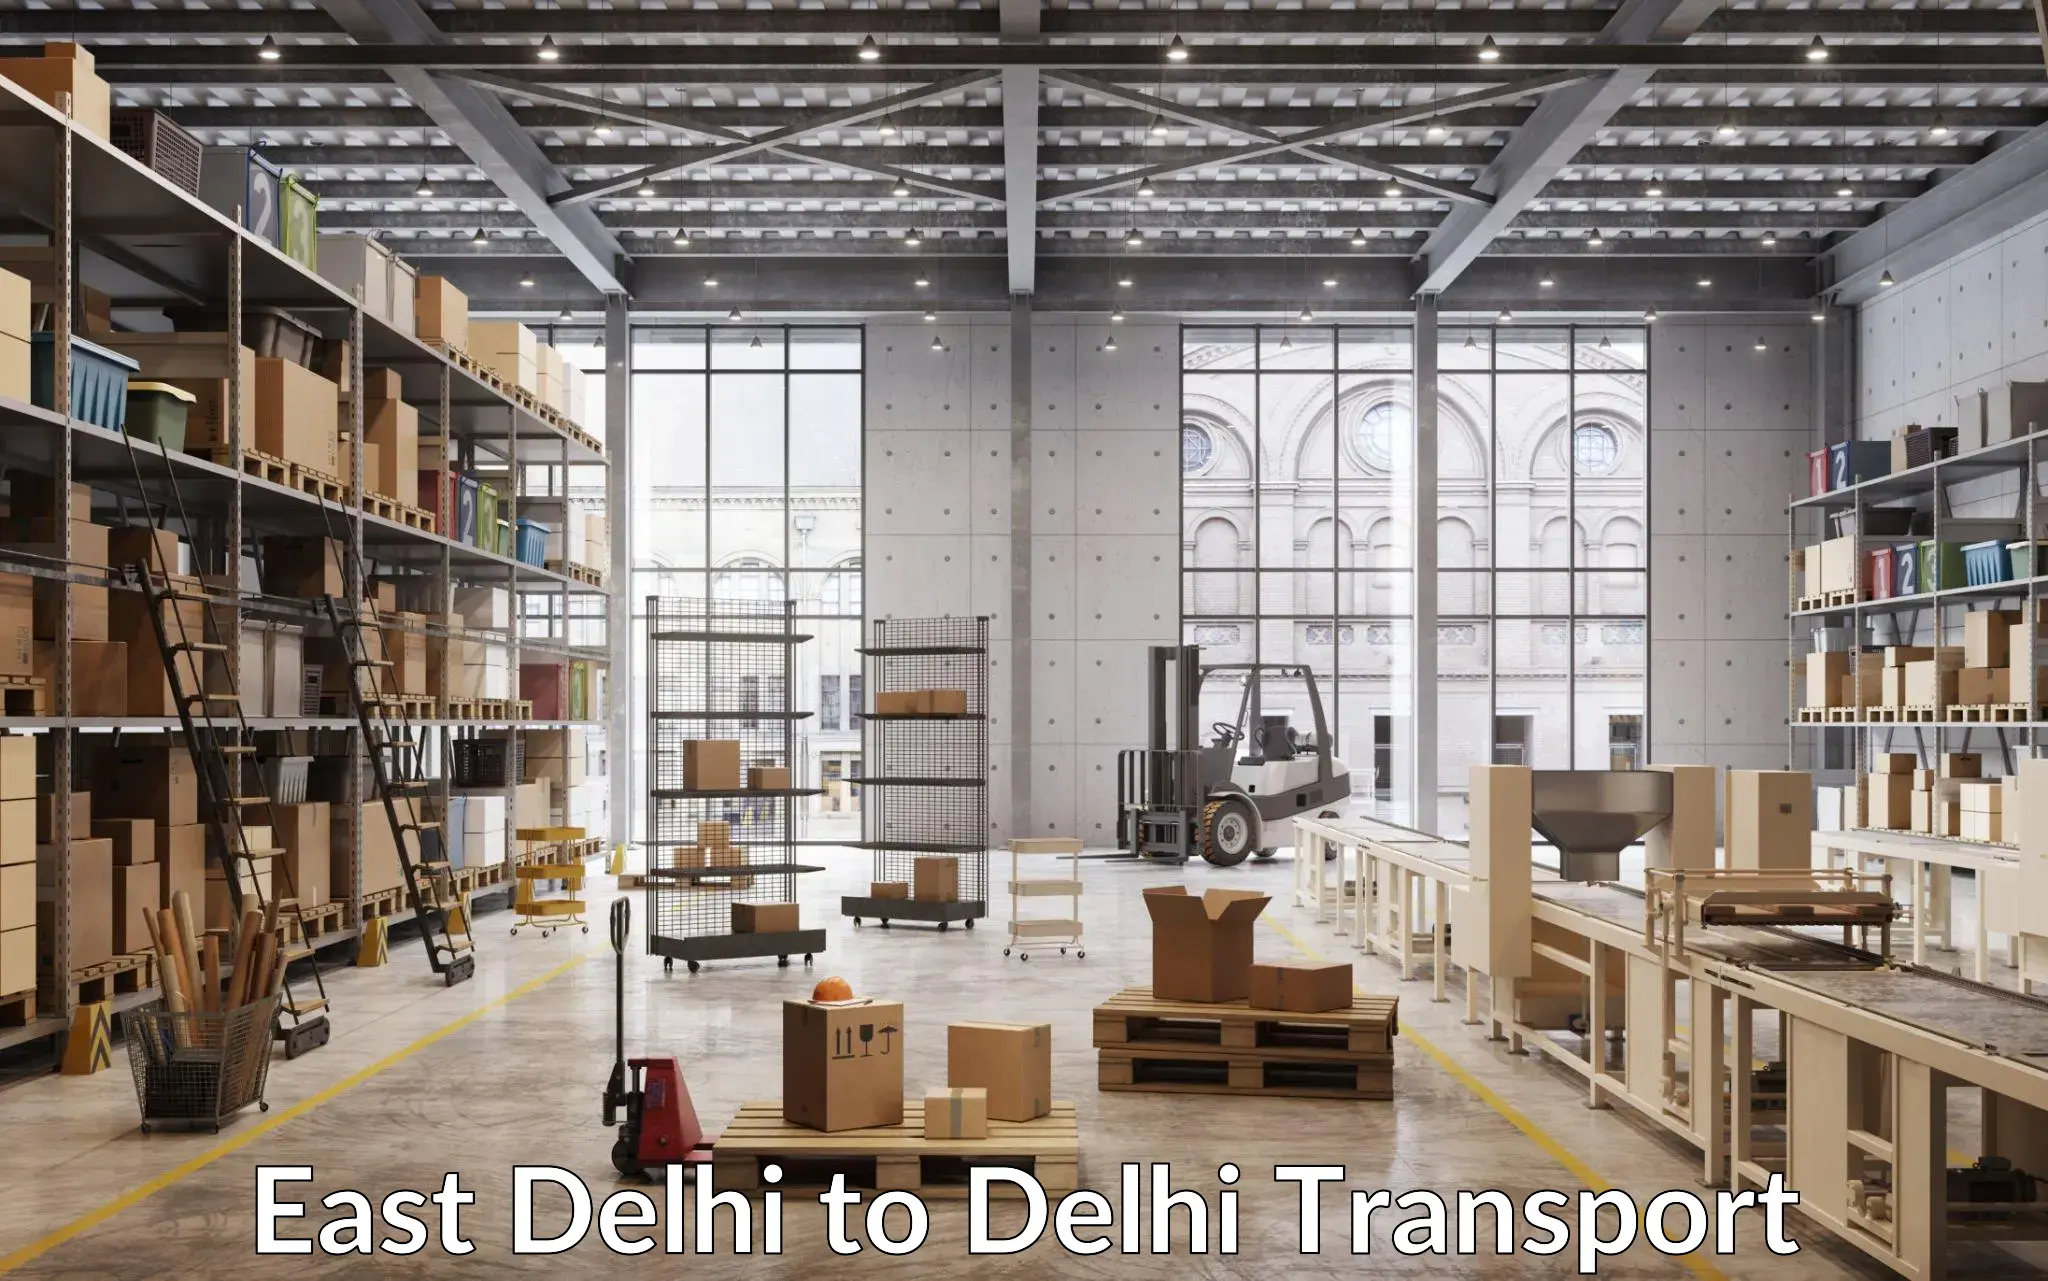 Express transport services East Delhi to IIT Delhi